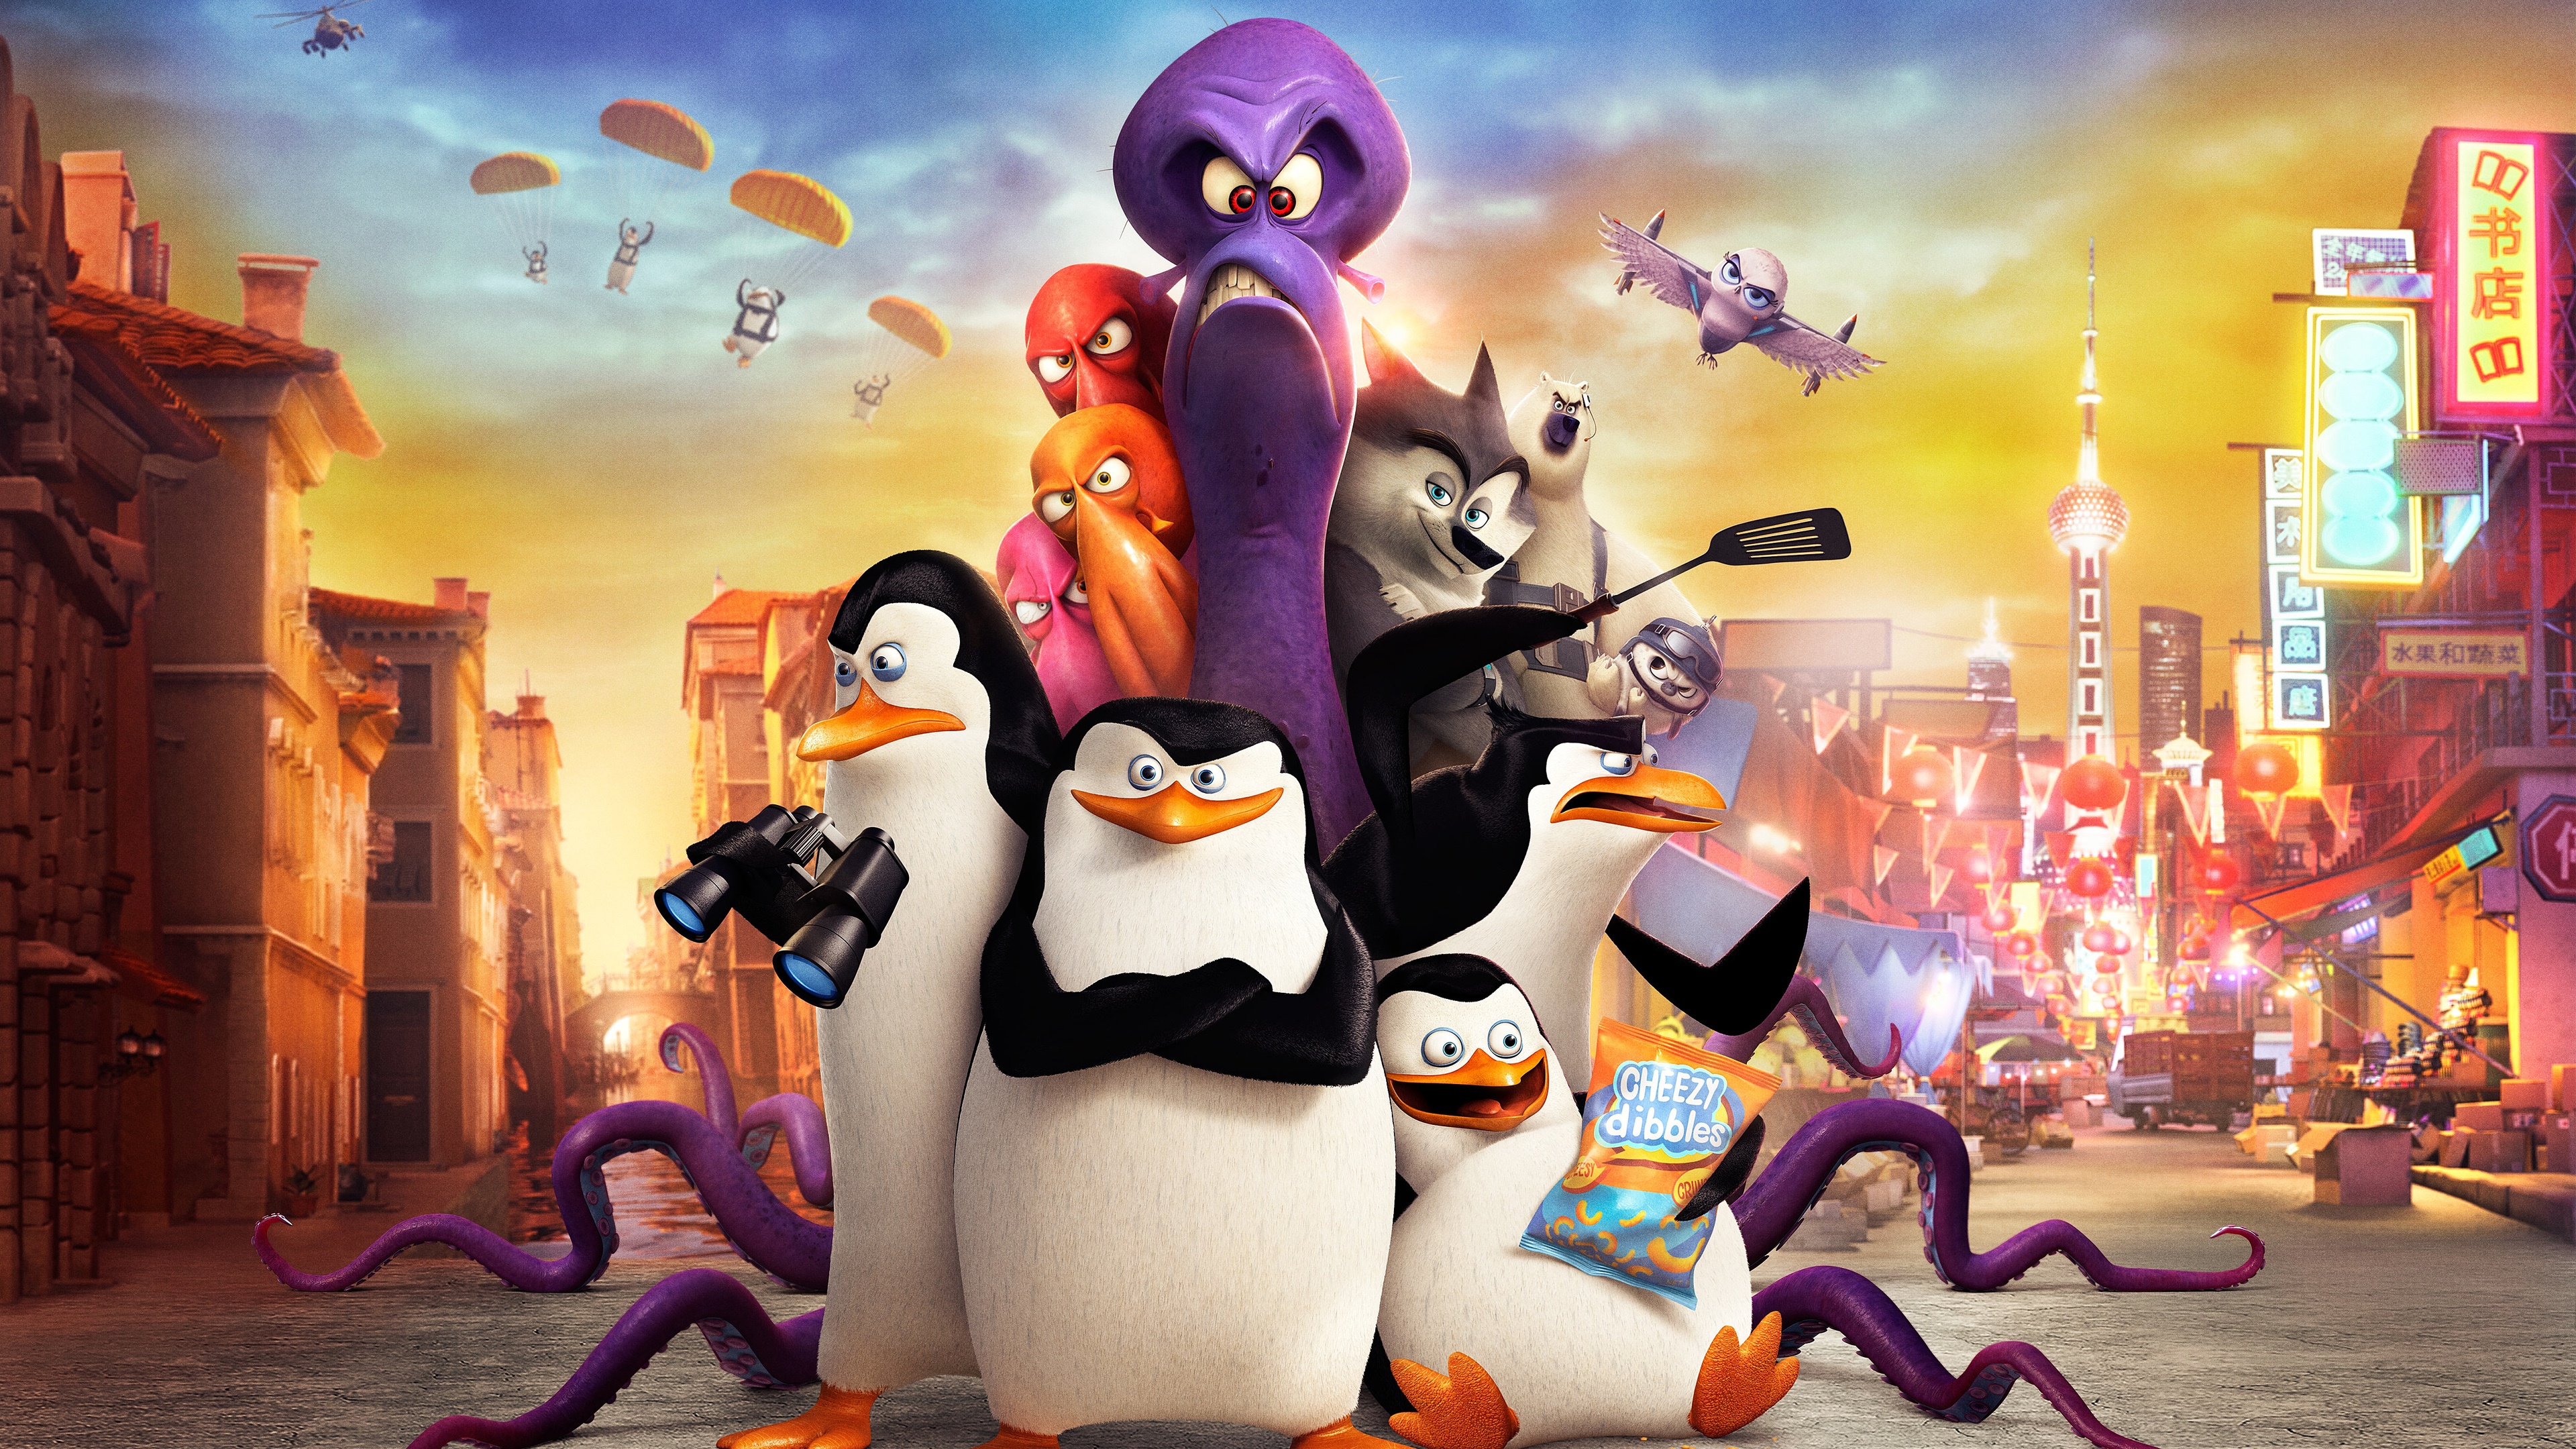 Скачать обои Пингвины Мадагаскара: Фильм на телефон бесплатно